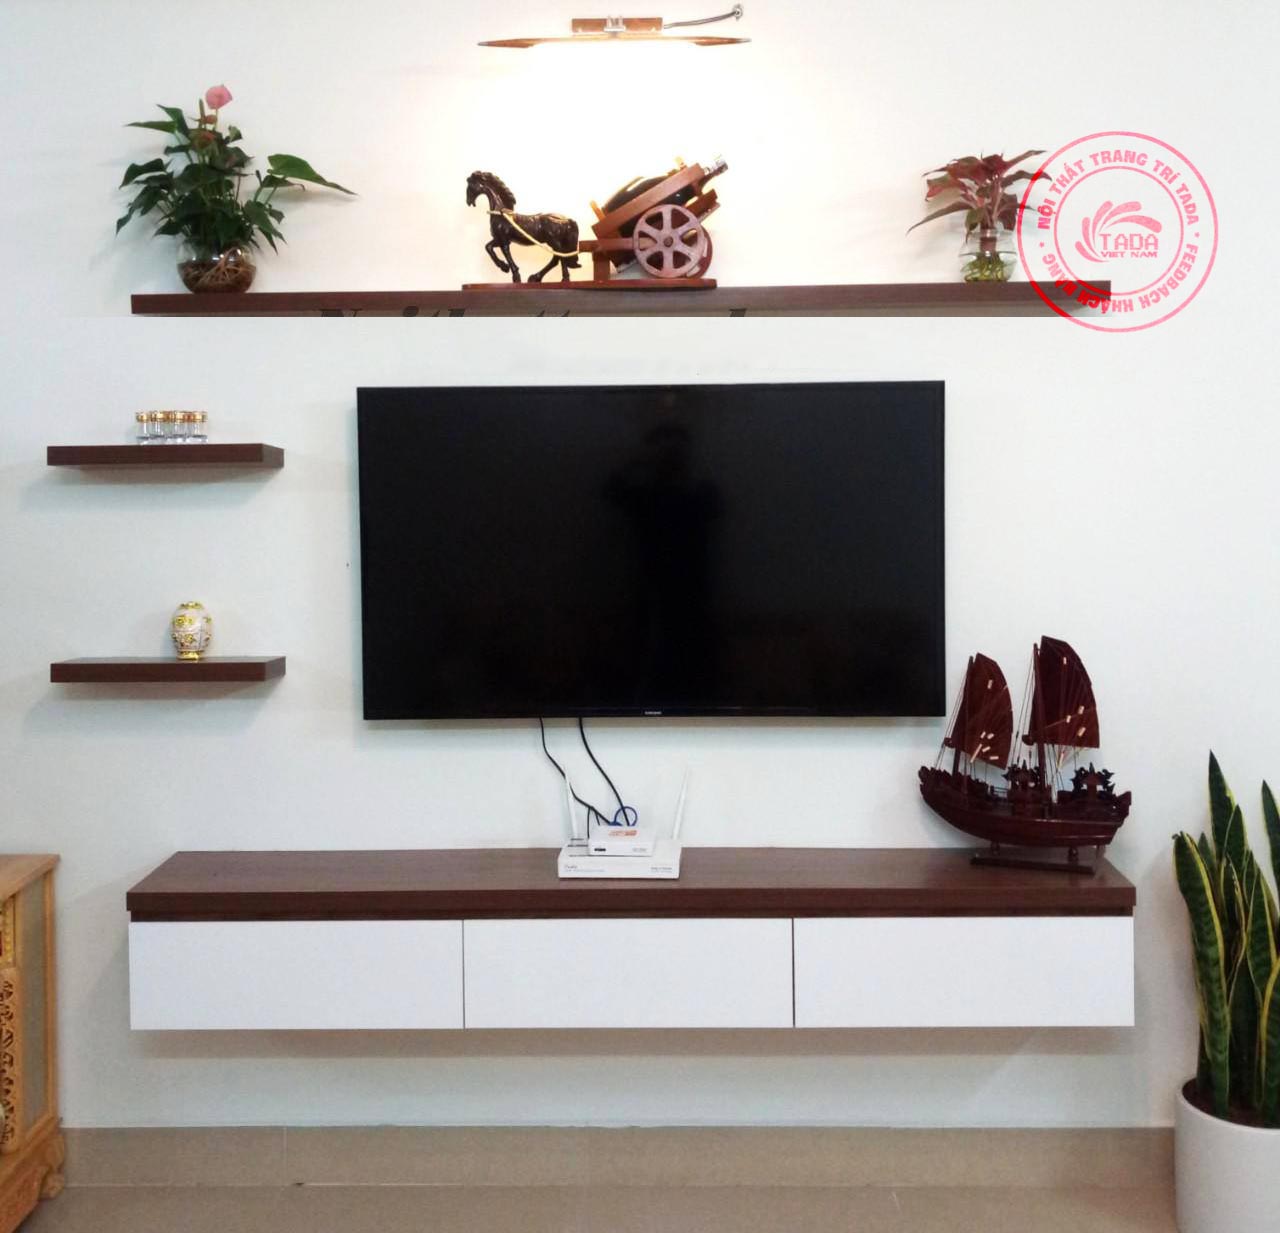 Một sản phẩm kệ tivi gỗ hiện đại chính là giải pháp số một cho không gian phòng khách của bạn trong năm